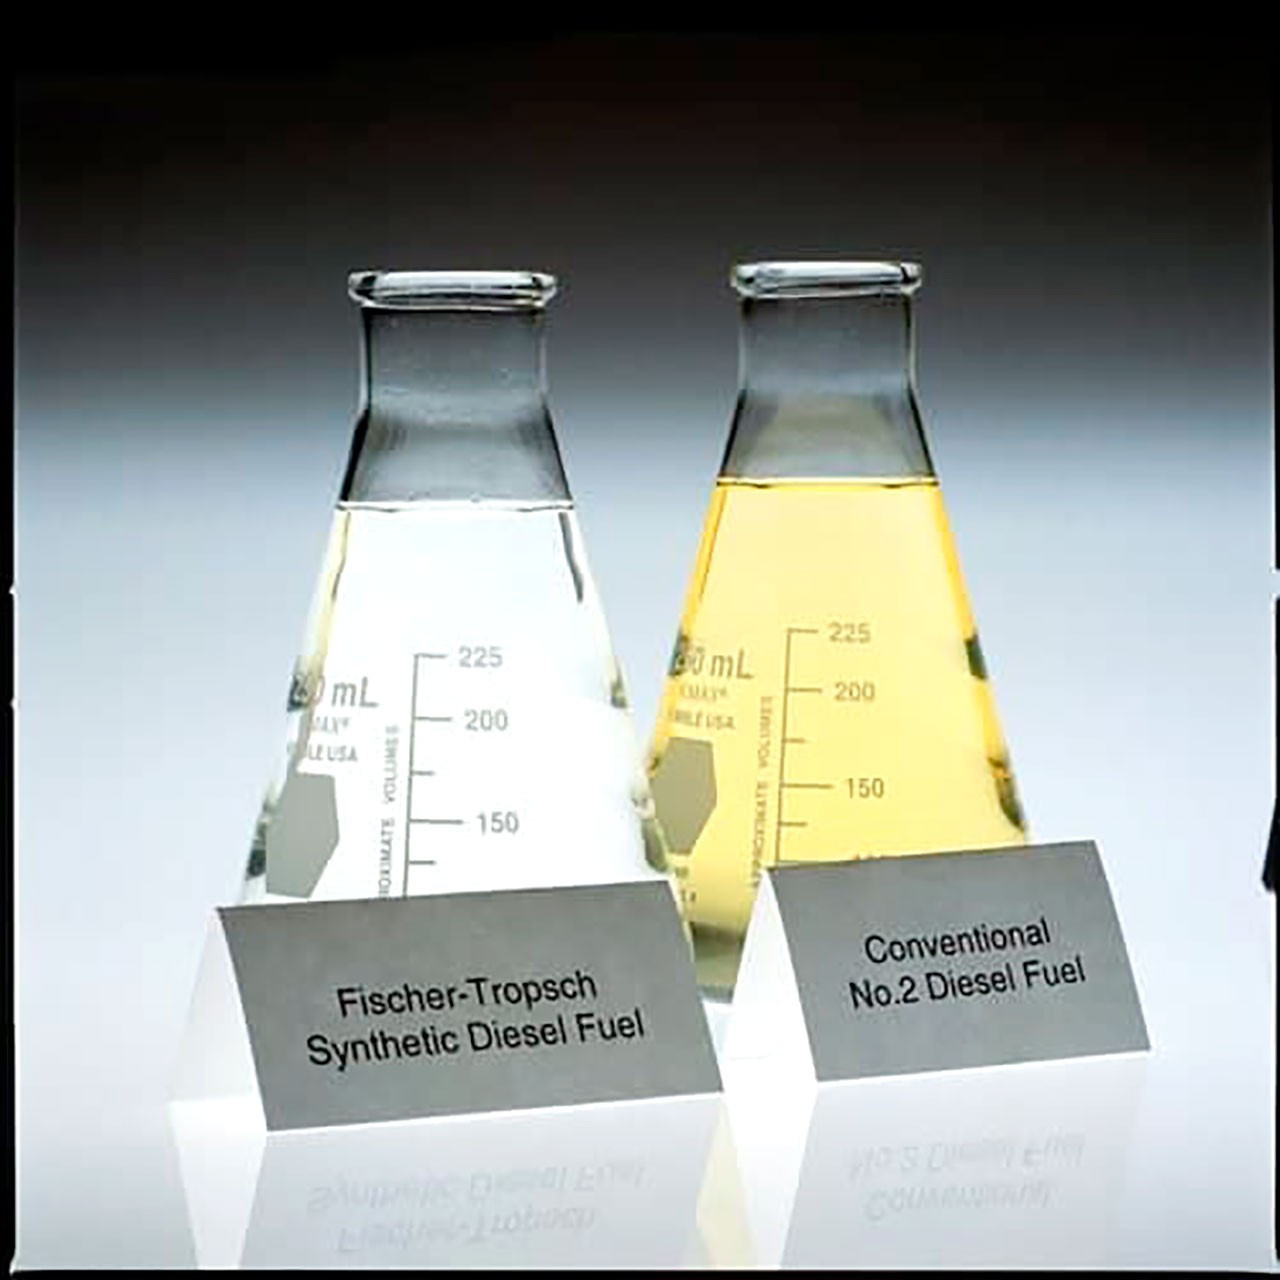 Синтетичен метан: визуално сравнение между FT синтетично гориво и традиционно гориво: първото е видимо по-чисто, прозрачно като вода поради почти пълната липса на сяра и ароматни съединения